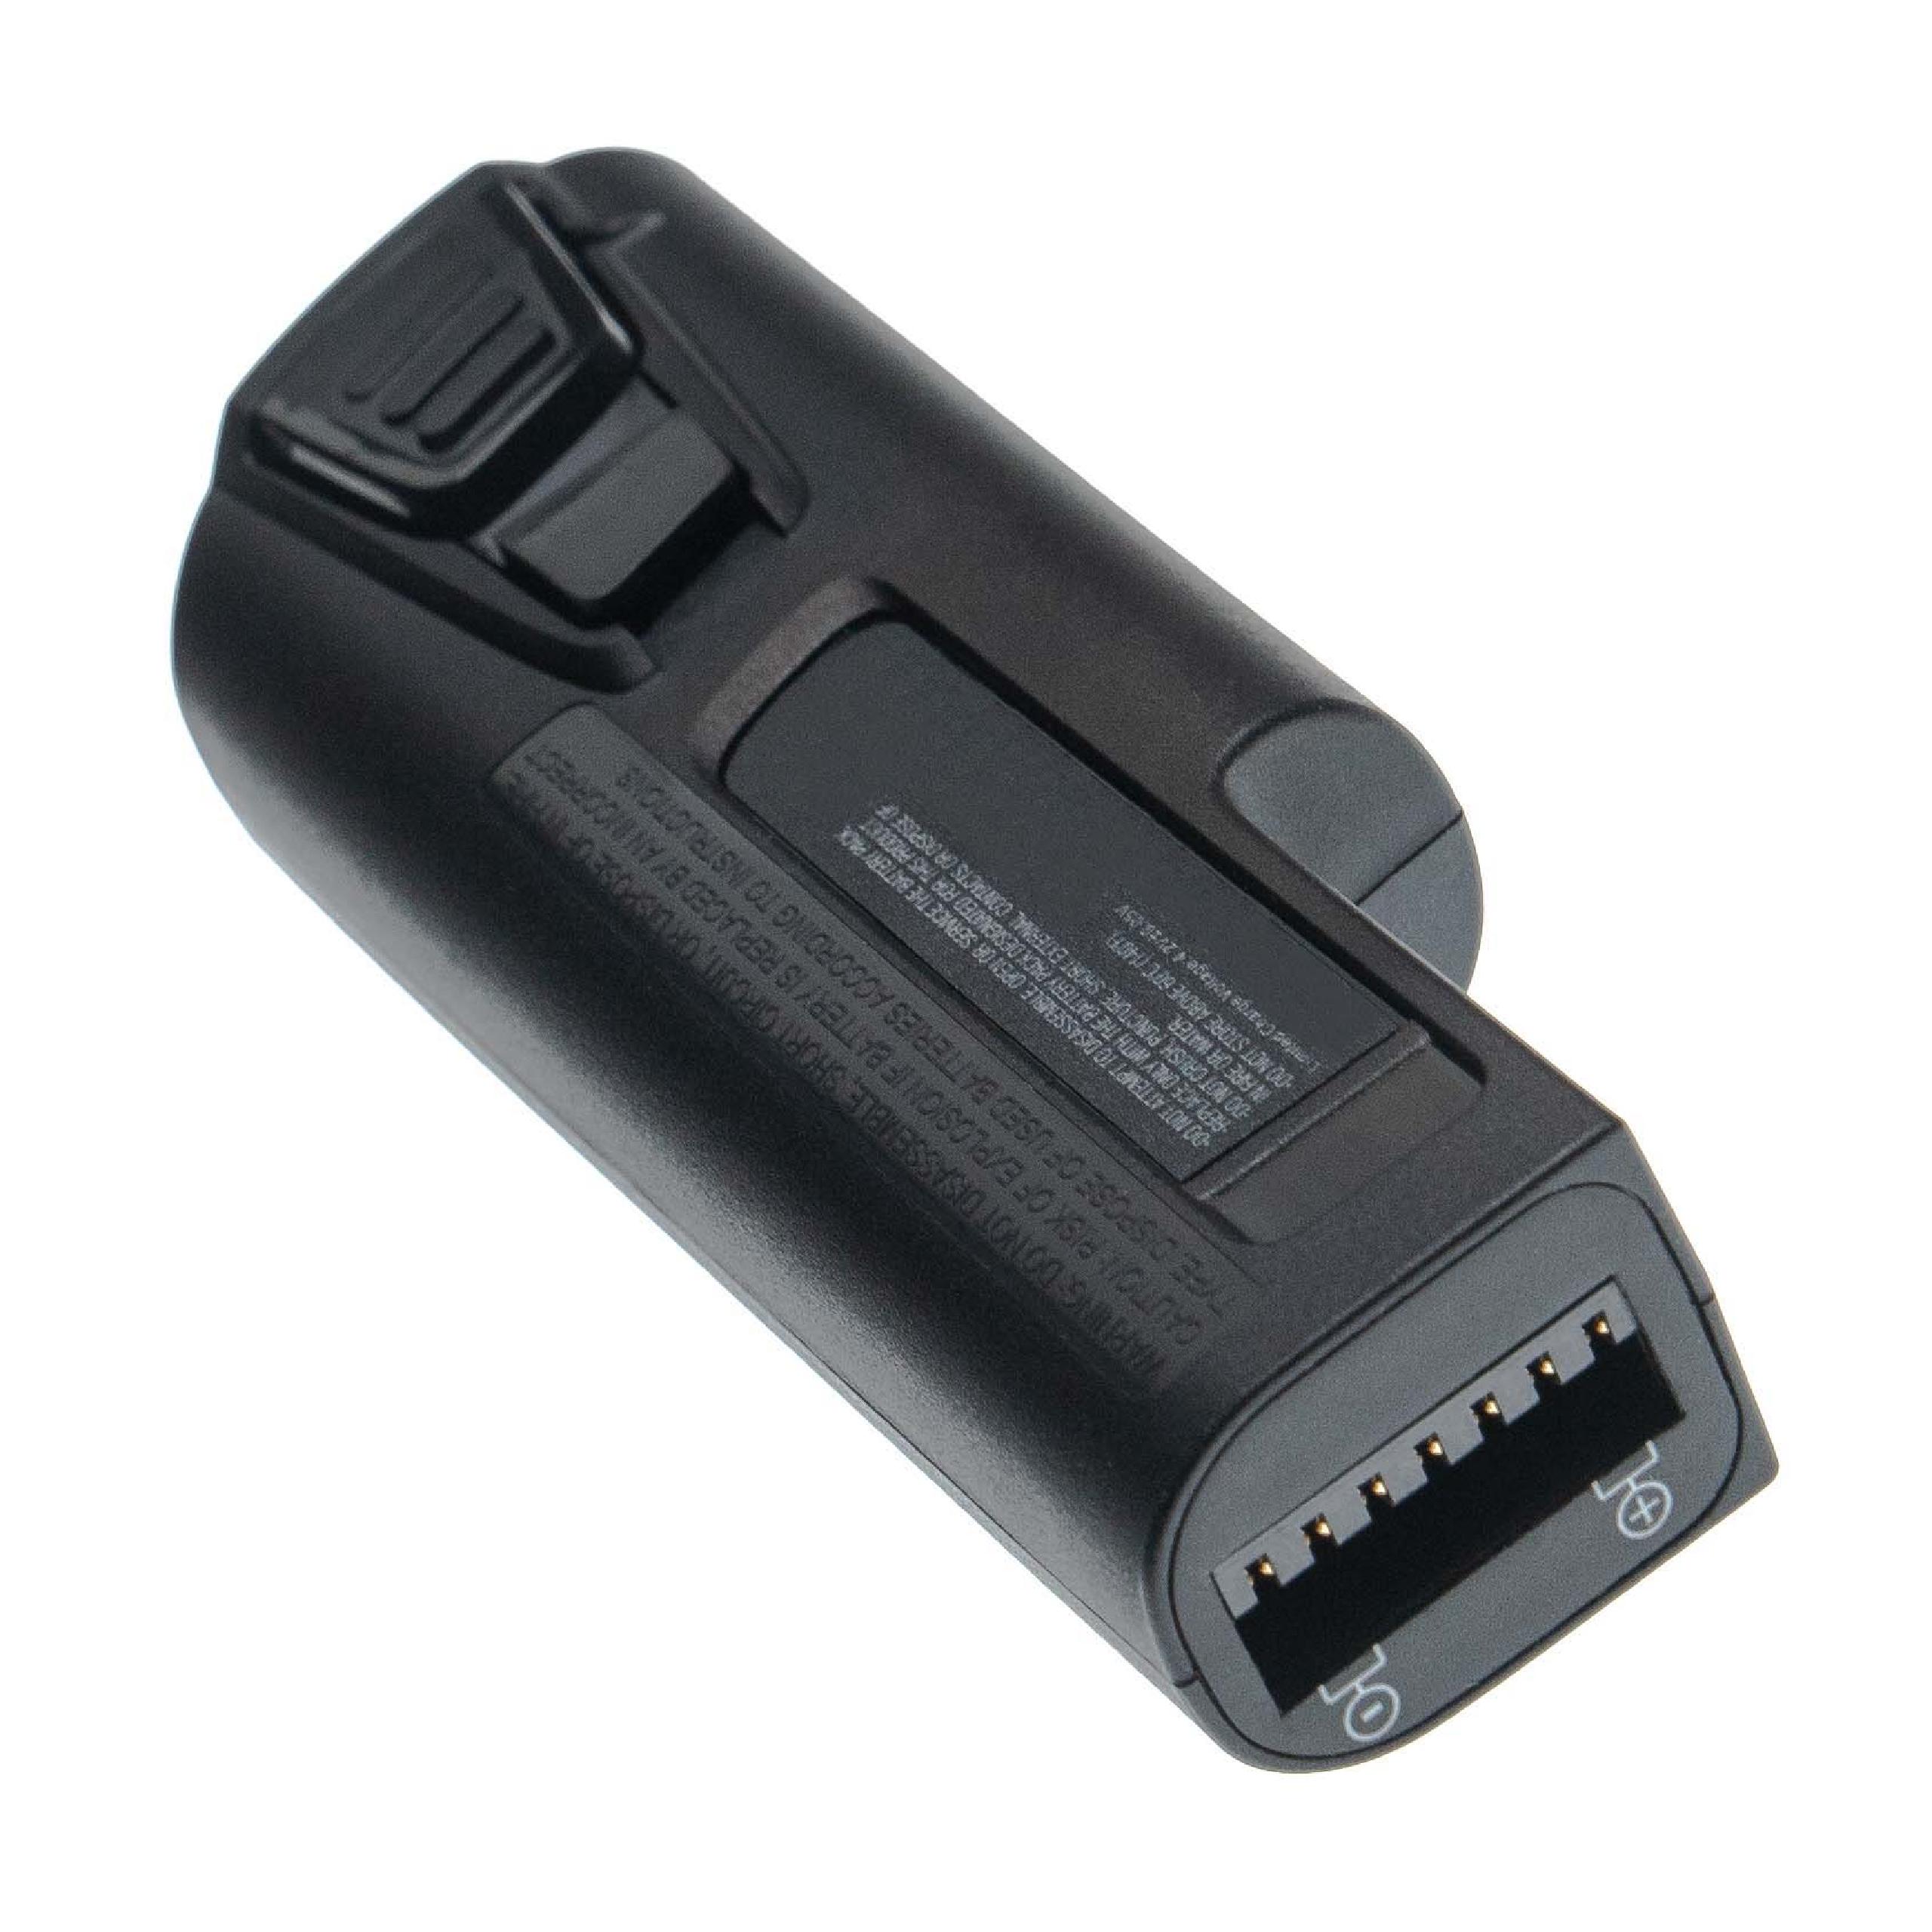 Batterie remplace Zebra 82-176054-04, 82-176054-01 pour scanner de code-barre - 6400mAh 3,7V Li-ion